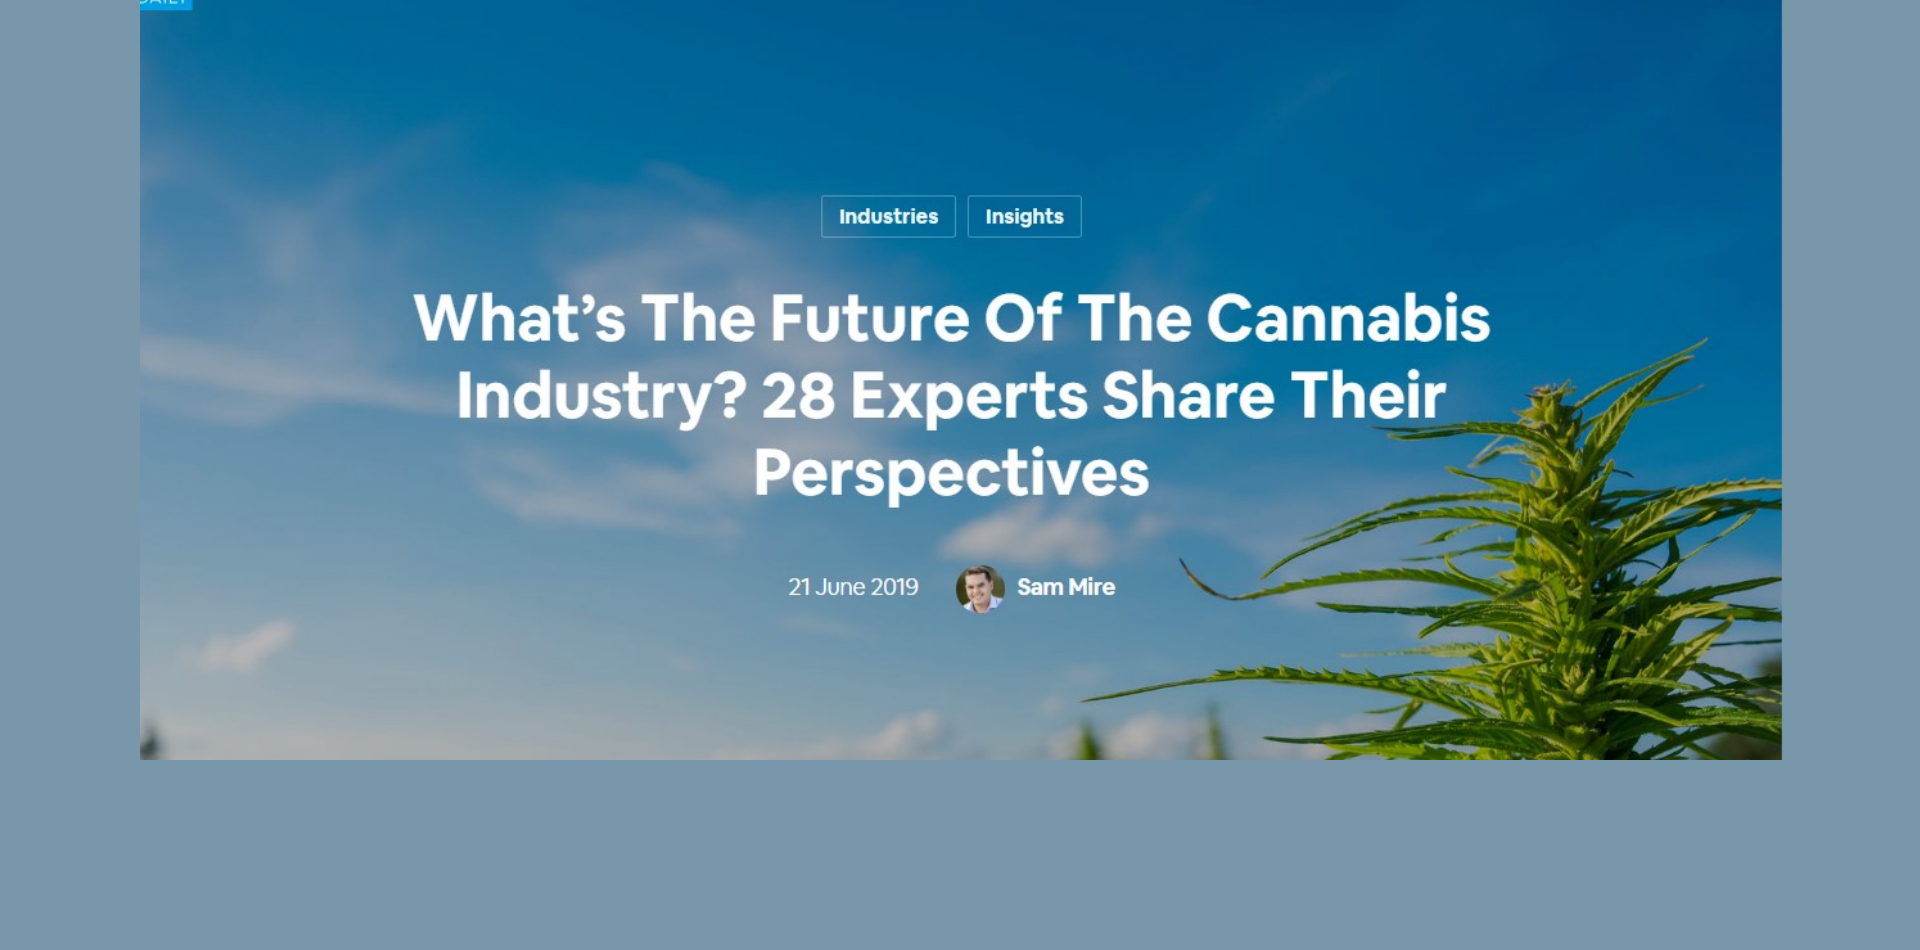 Was ist die Zukunft der Cannabisindustrie? 28 Experten teilen ihre Sichtweise